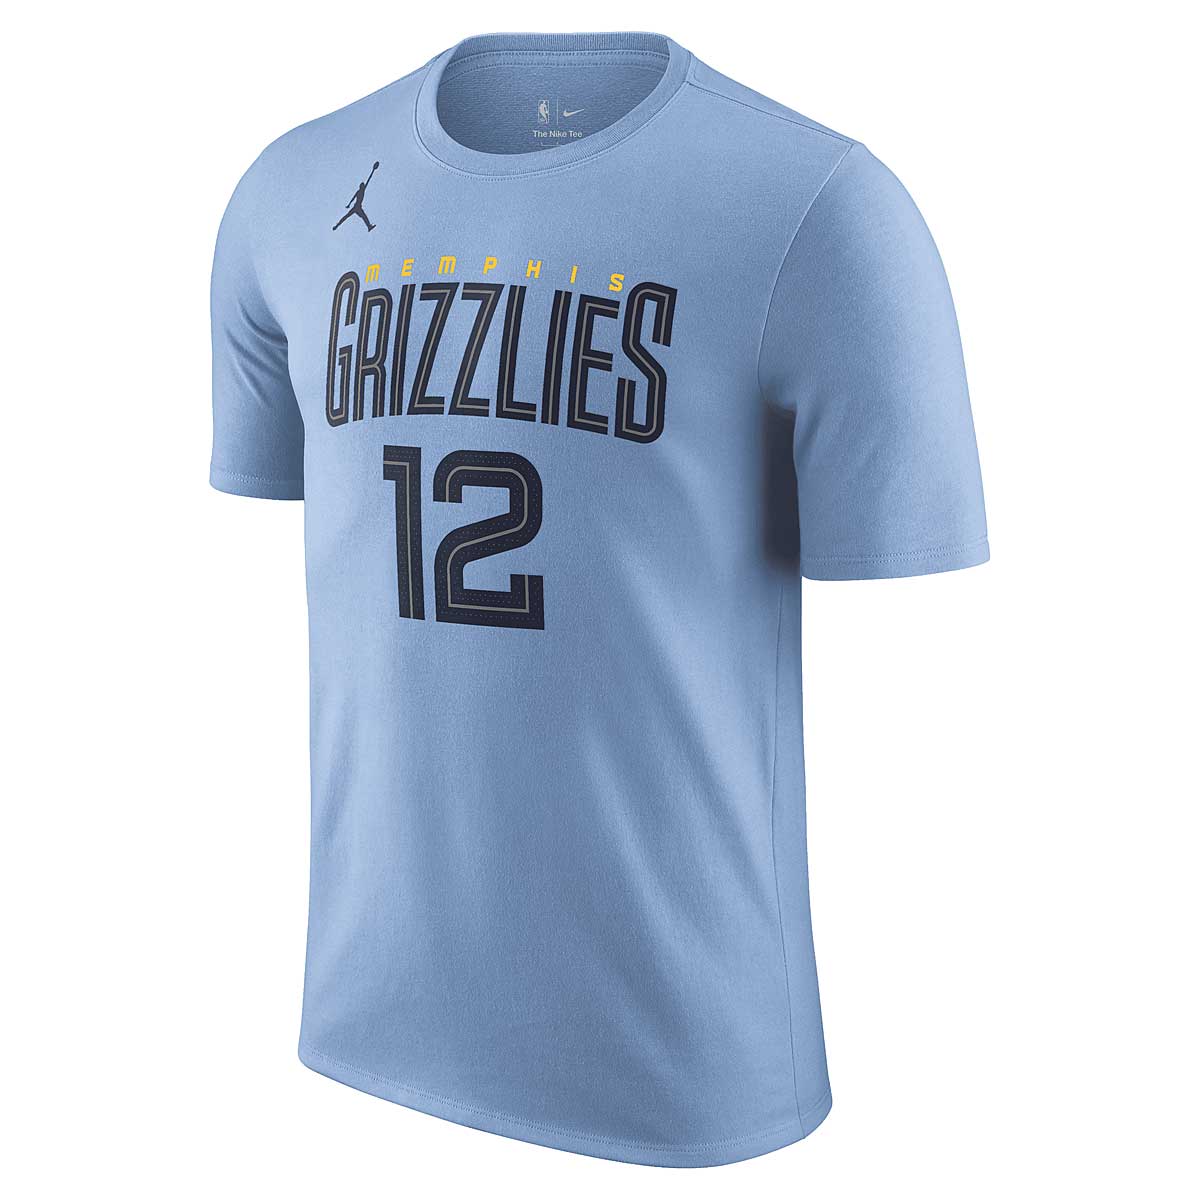 Nike NBA Memphis Grizzlies Statement N&n T-shirt Ja Morant, Light Blau/morant Ja L